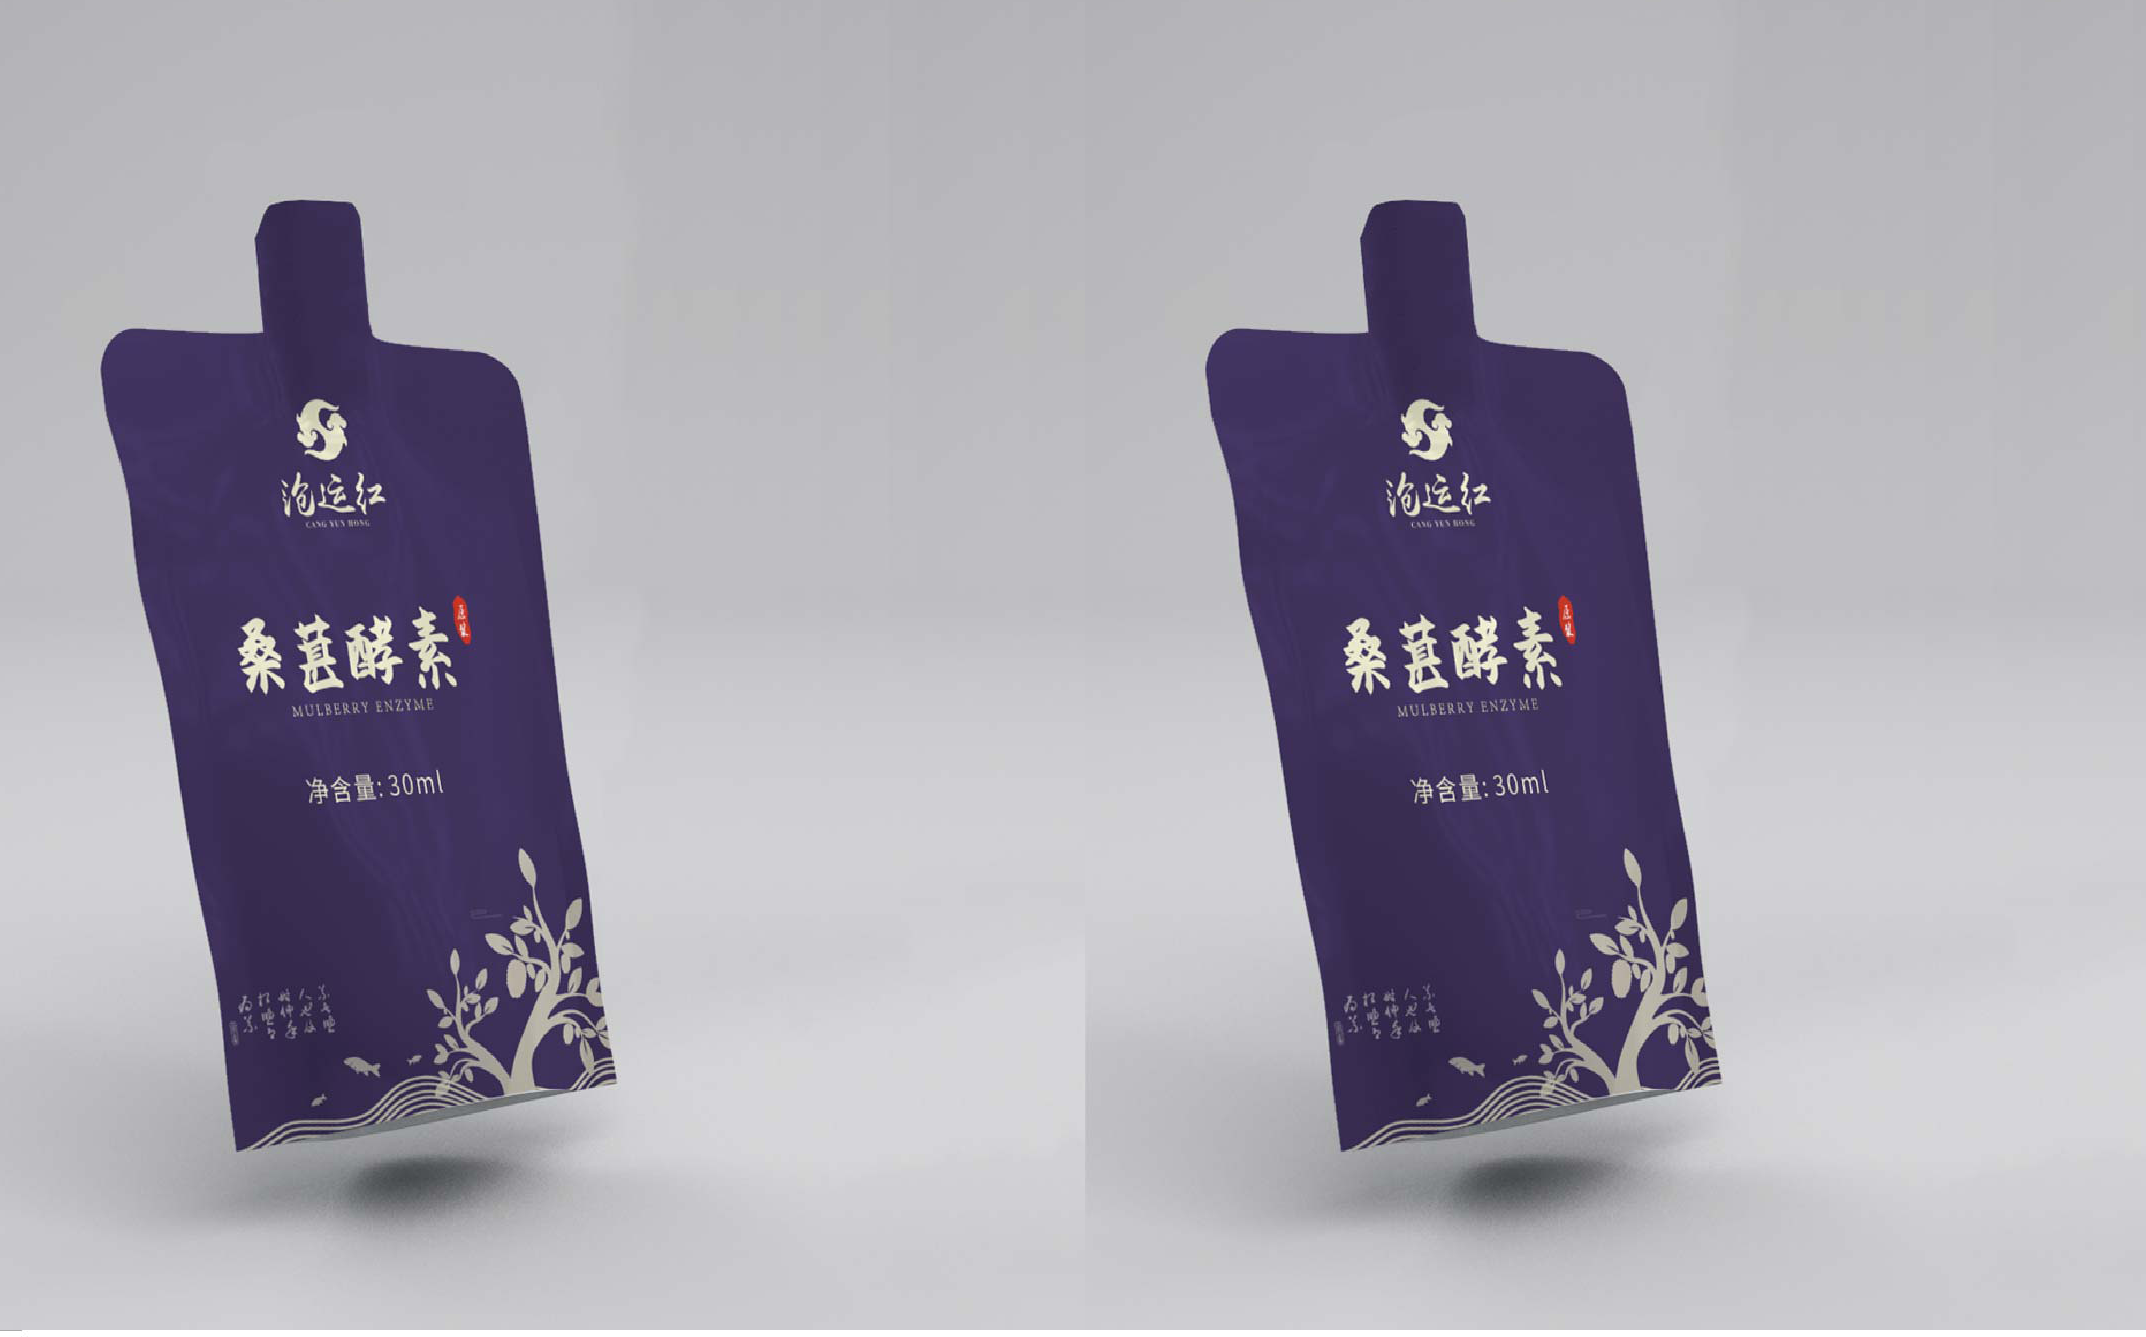 热门云南瓶型设计公司作品前三甲名单公开 